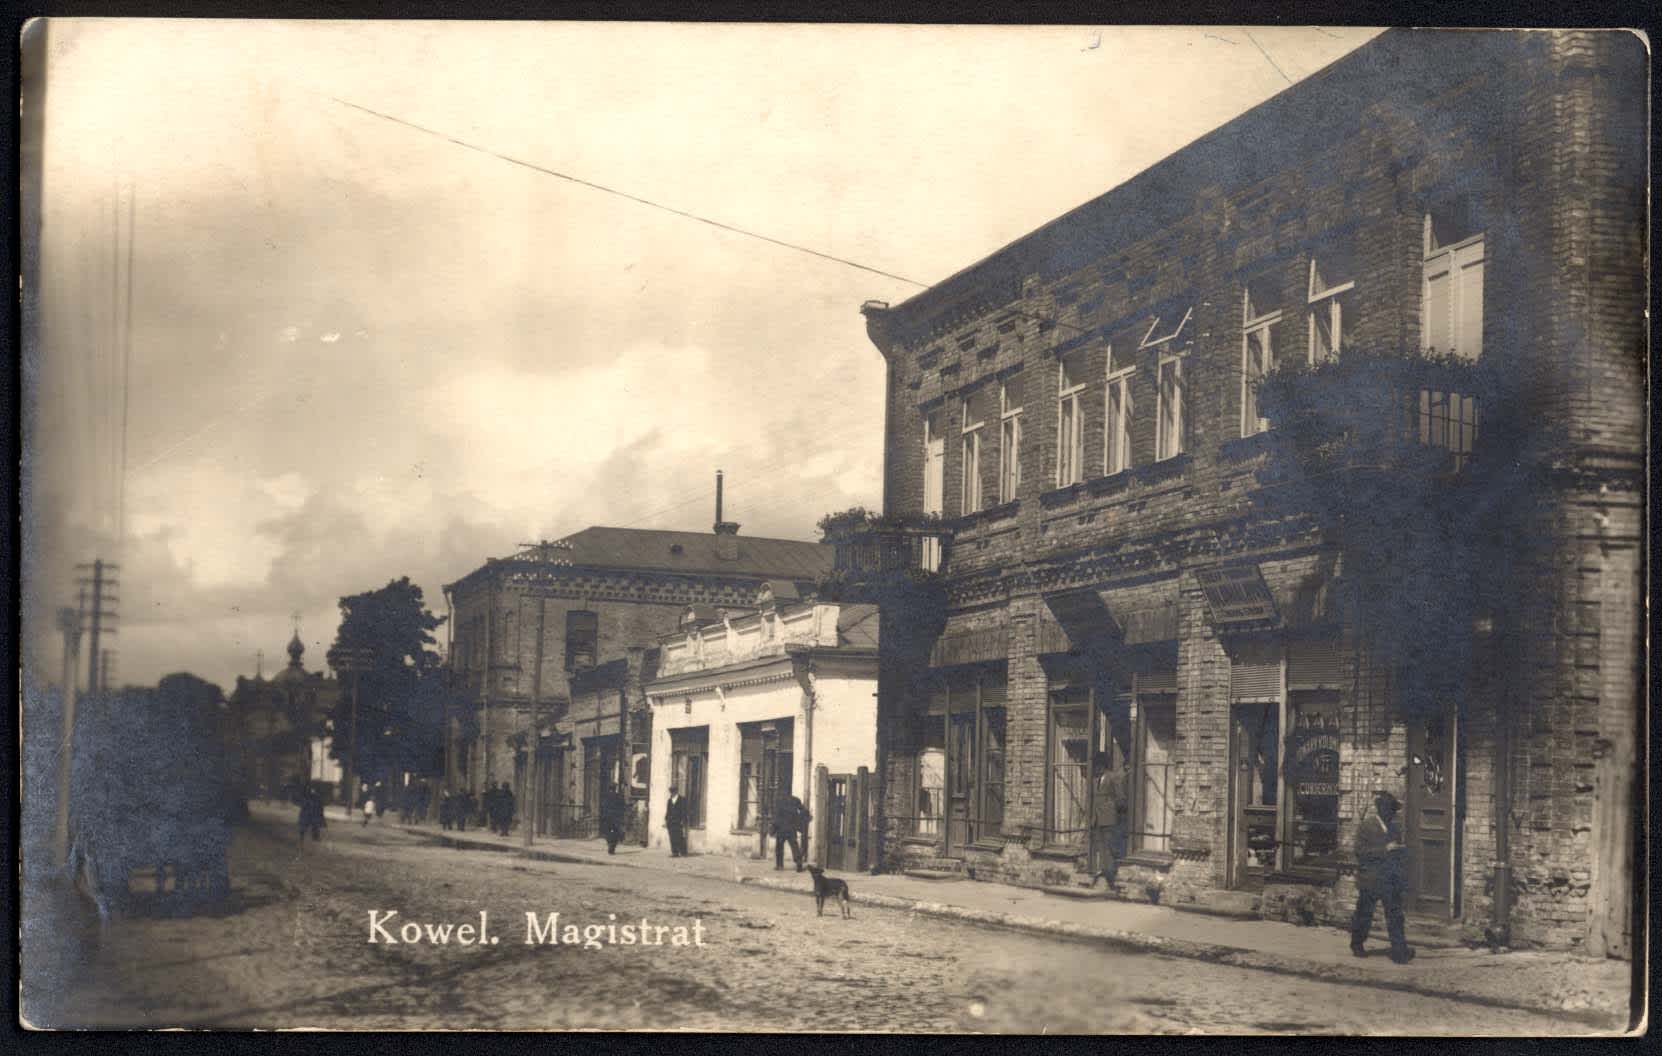 Kowel street scene before World War II